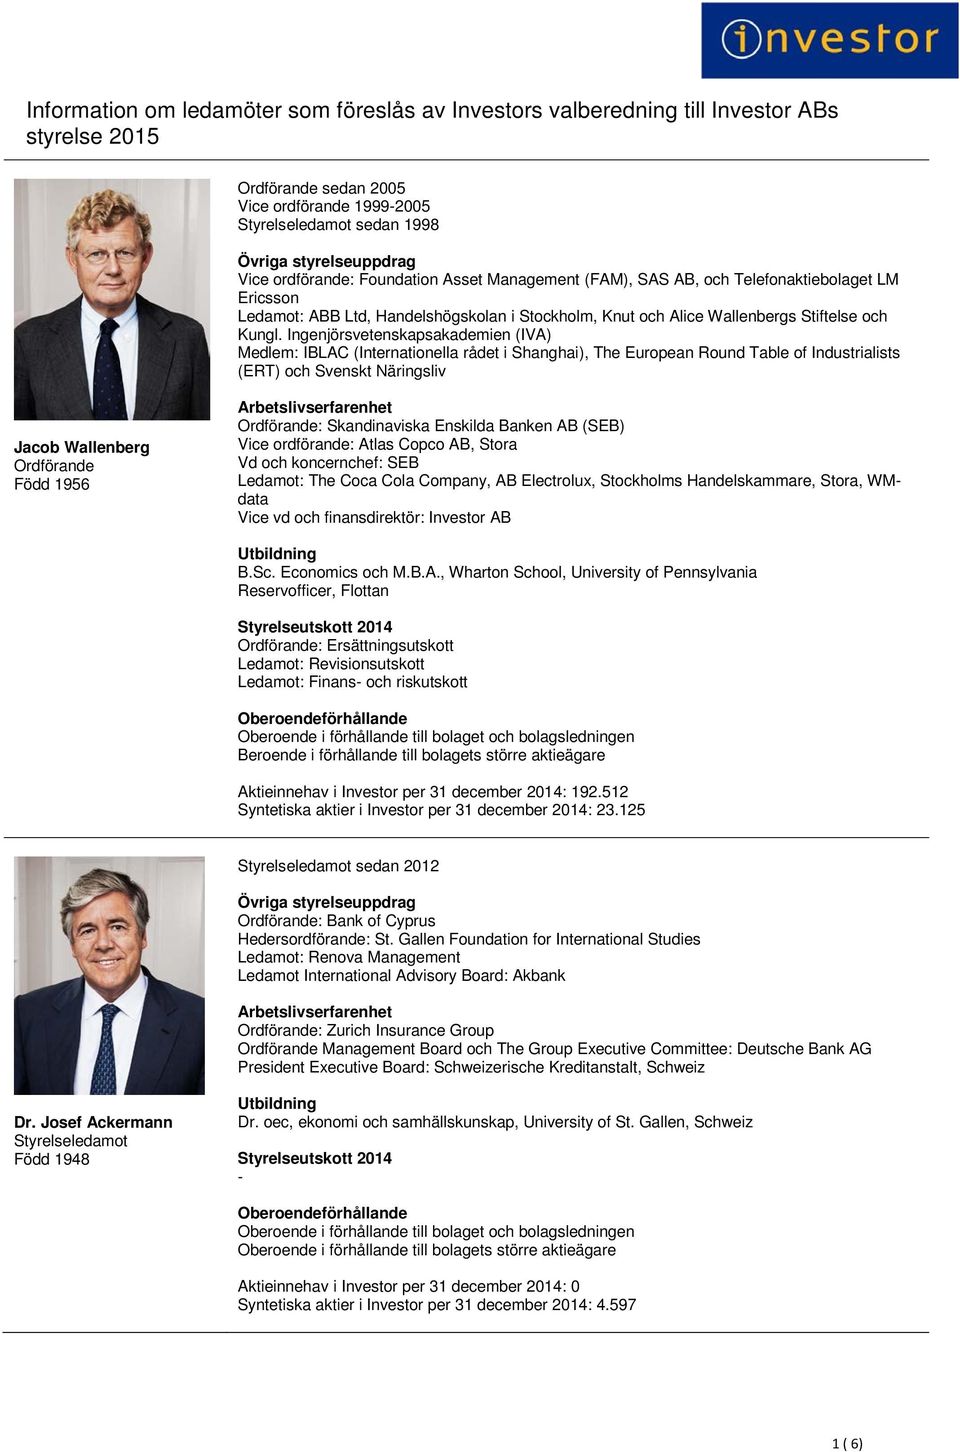 Ingenjörsvetenskapsakademien (IVA) Medlem: IBLAC (Internationella rådet i Shanghai), The European Round Table of Industrialists (ERT) och Svenskt Näringsliv Jacob Wallenberg Ordförande Född 1956